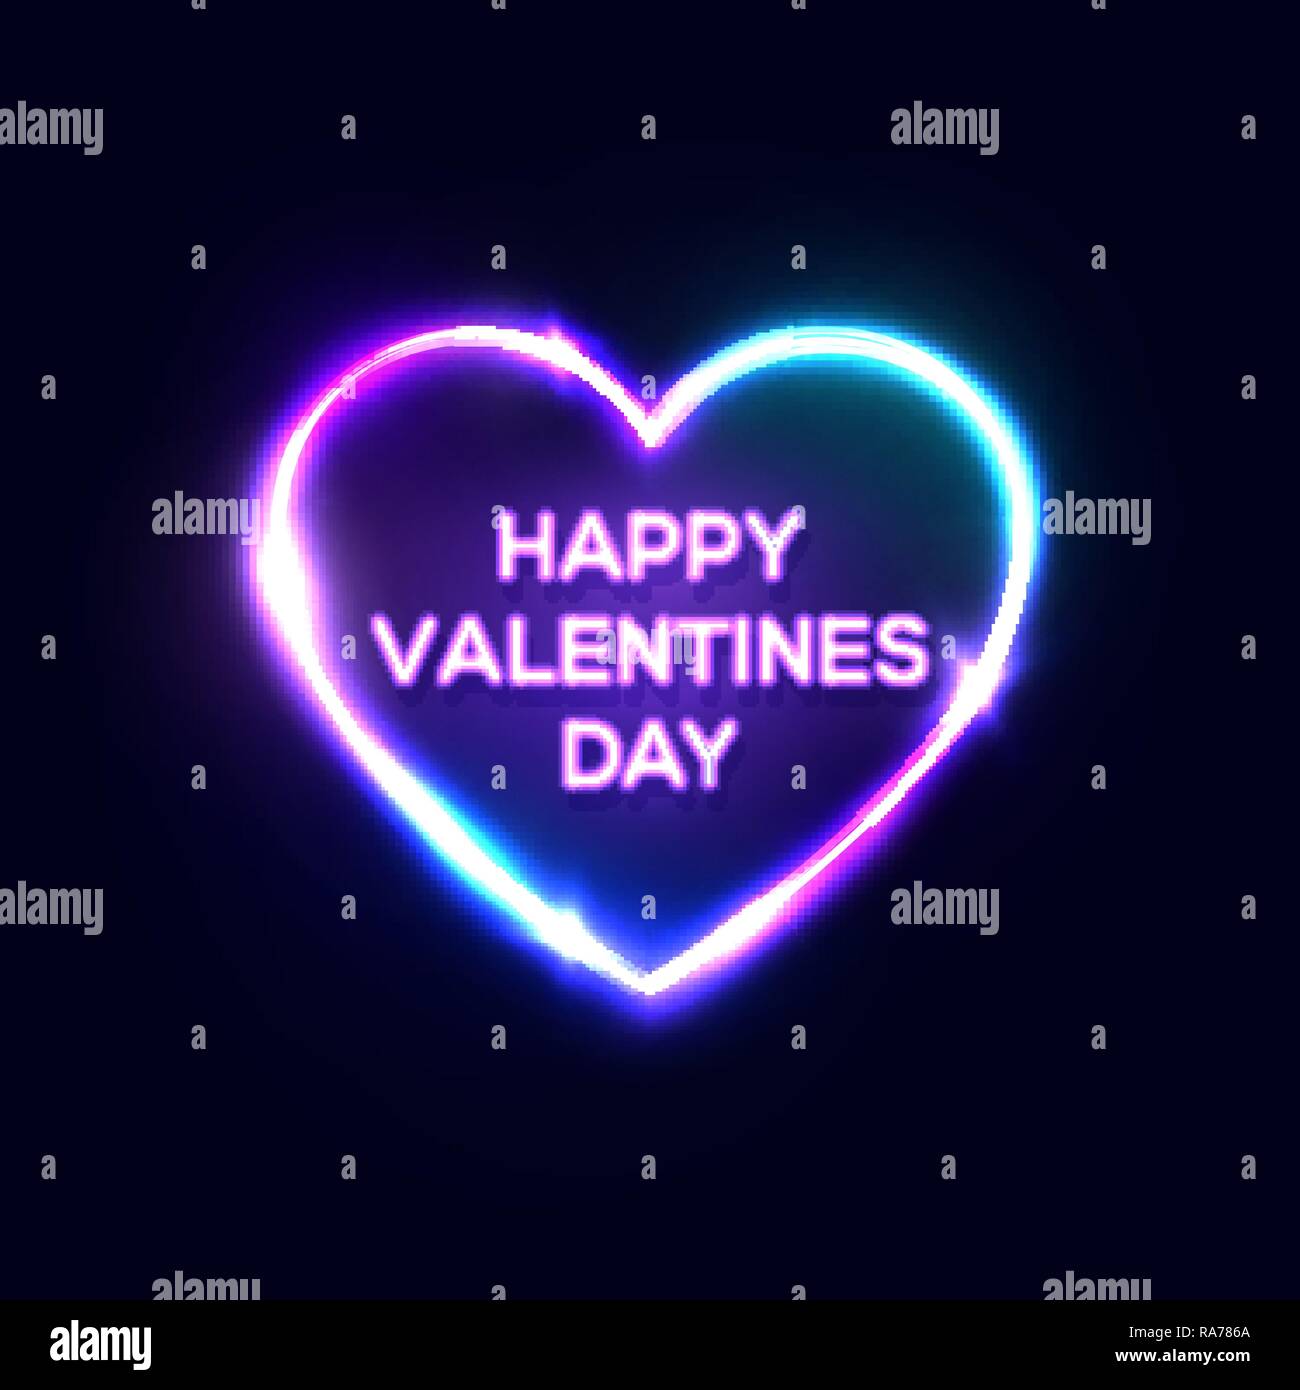 Feliz Día de San Valentín texto en el cartel de neón en forma de corazón. Diseño de tarjeta de felicitación brillantes sobre fondo azul oscuro de la noche. Led luz lámpara eléctrica decorativa banner. Color ilustración vectorial en retro estilo años 80. Ilustración del Vector